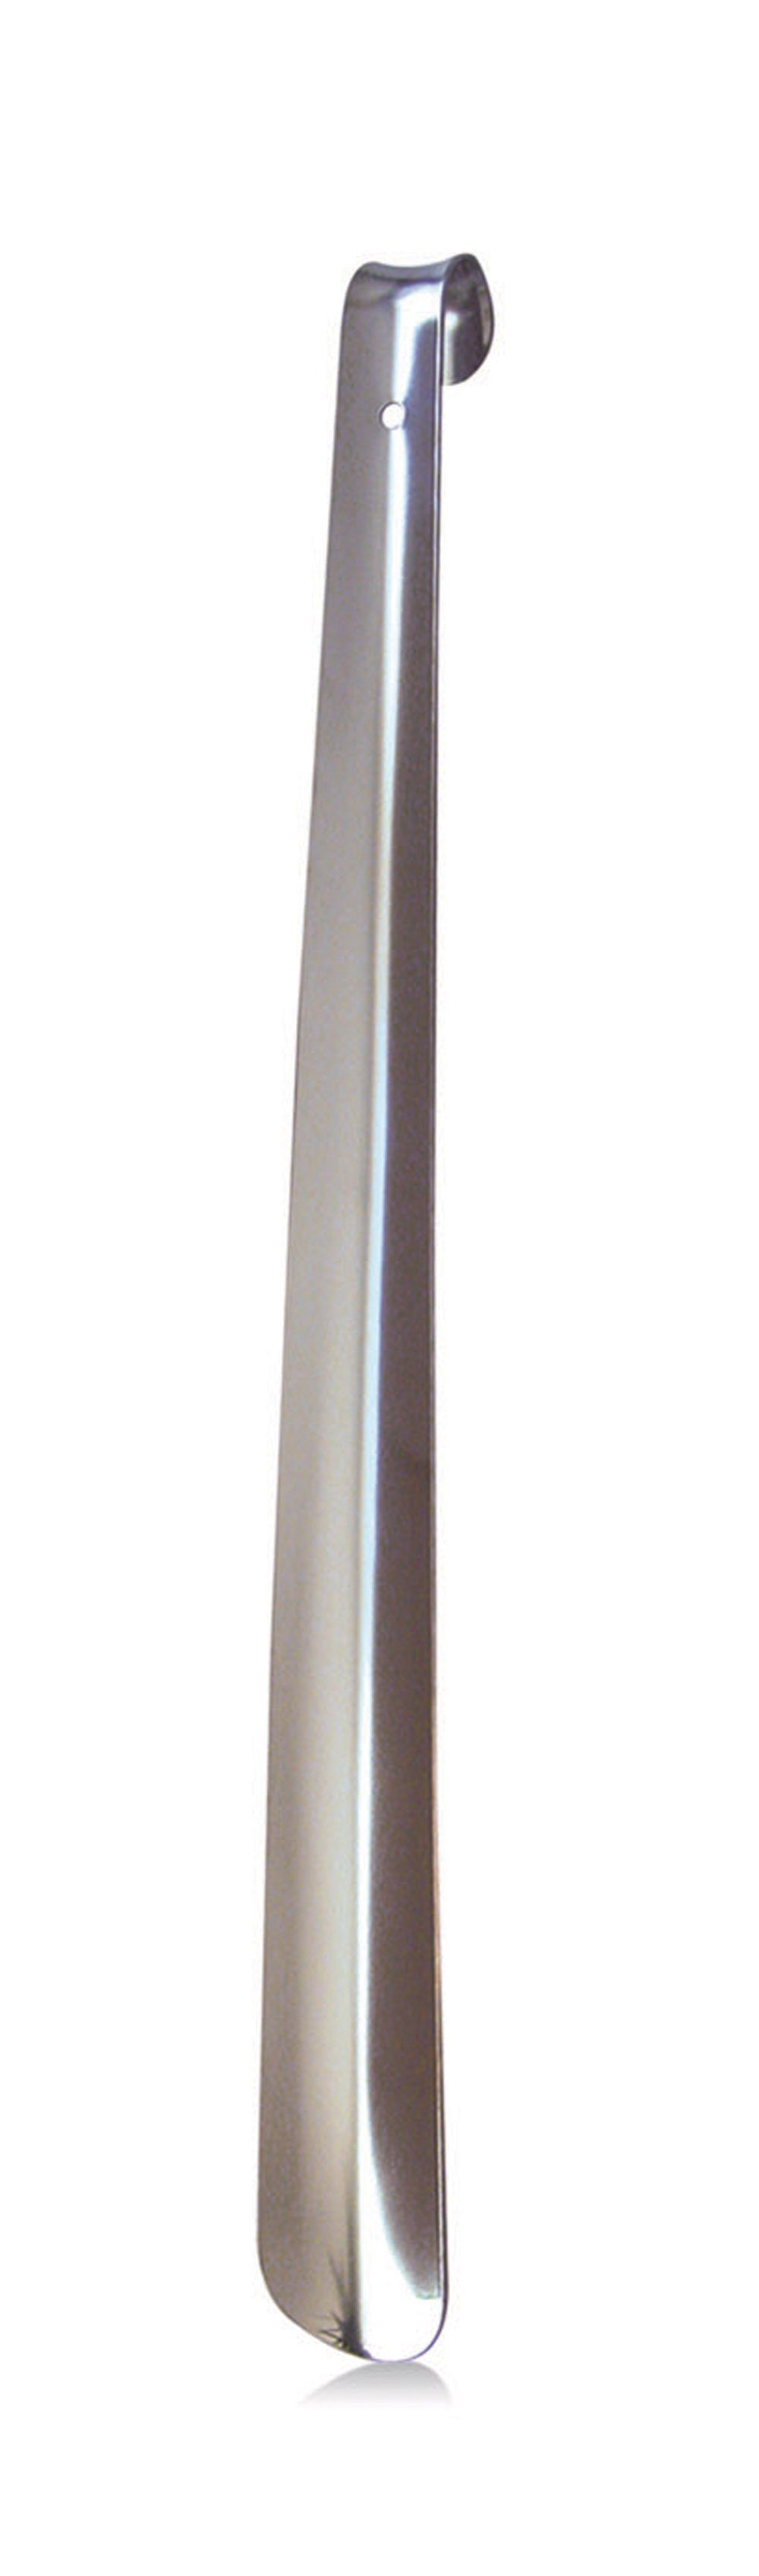 BAMA Group Schuhlöffel Schuhanzieher aus Metall - 42 cm